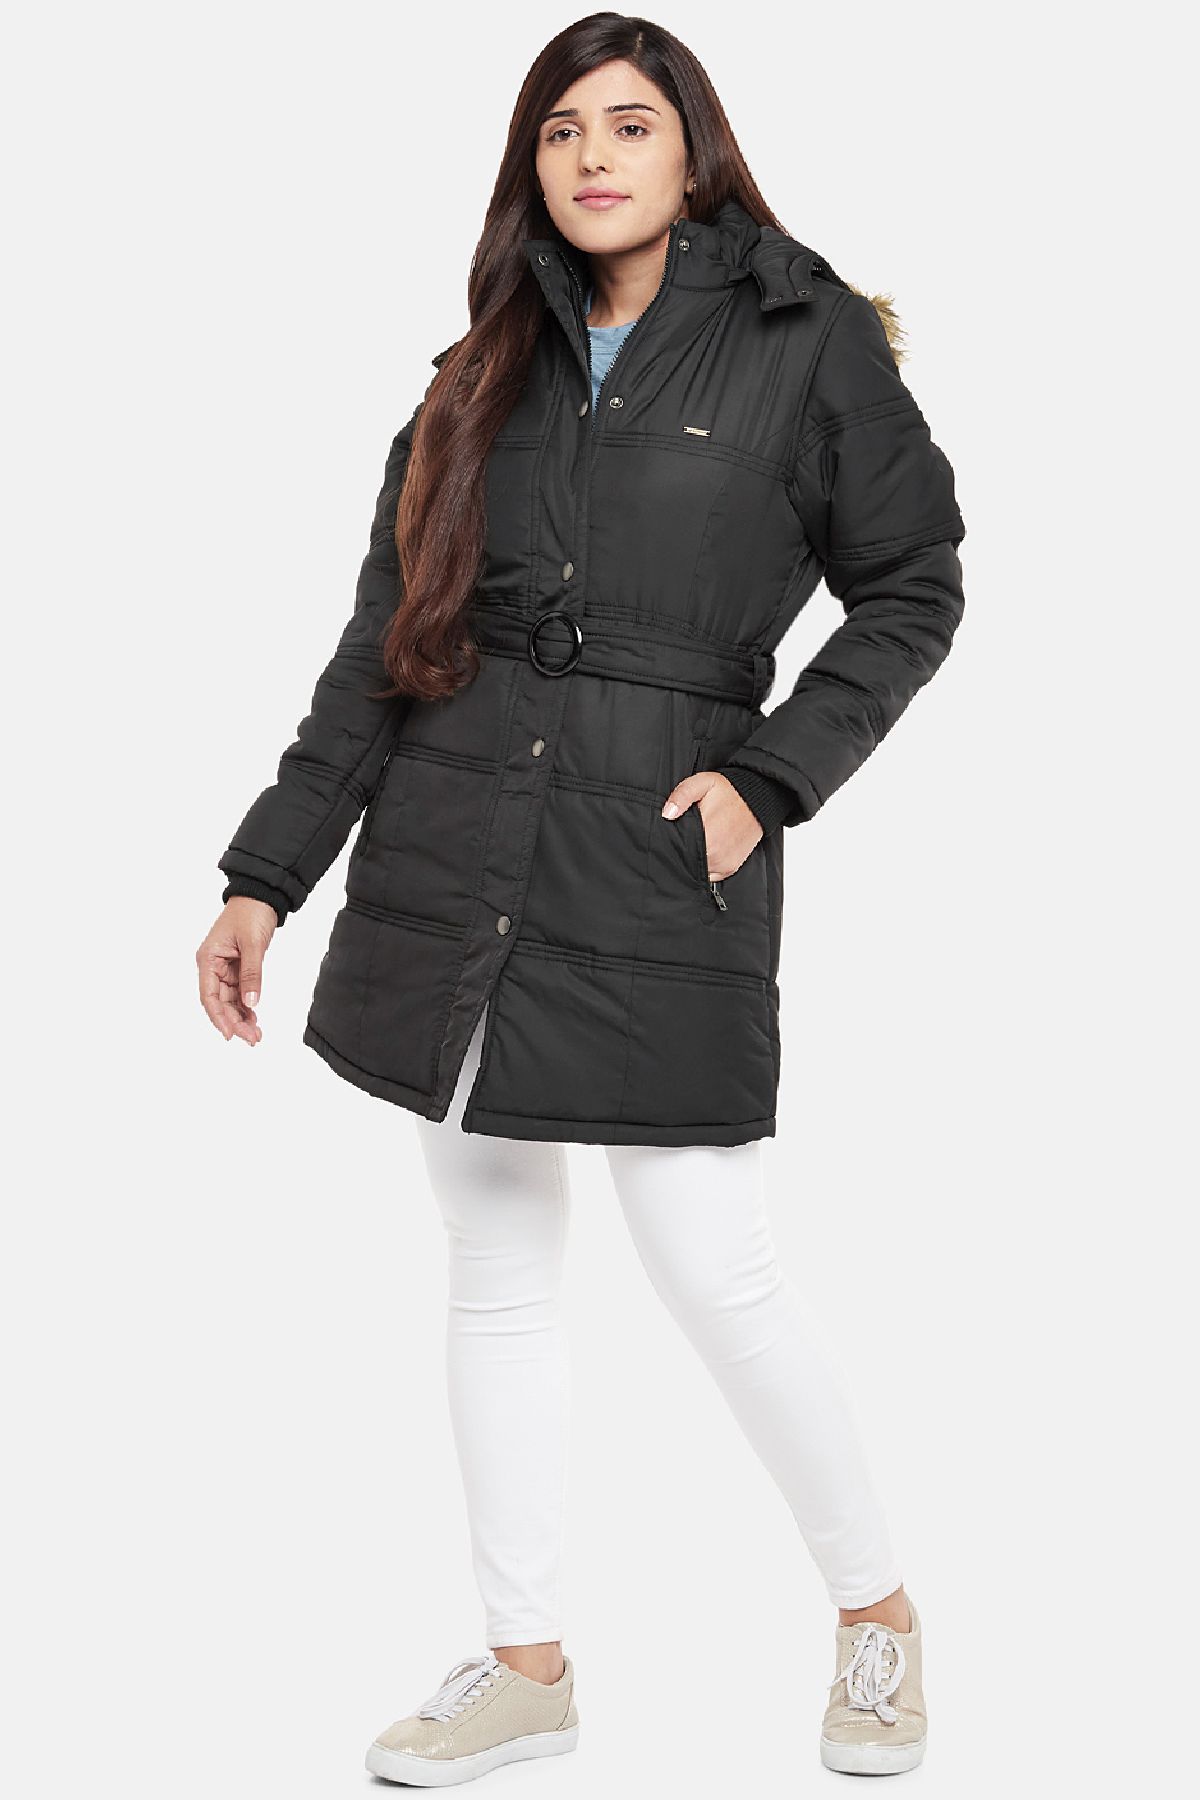 Black Fleece Lined Hooded Parka Jacket | Women